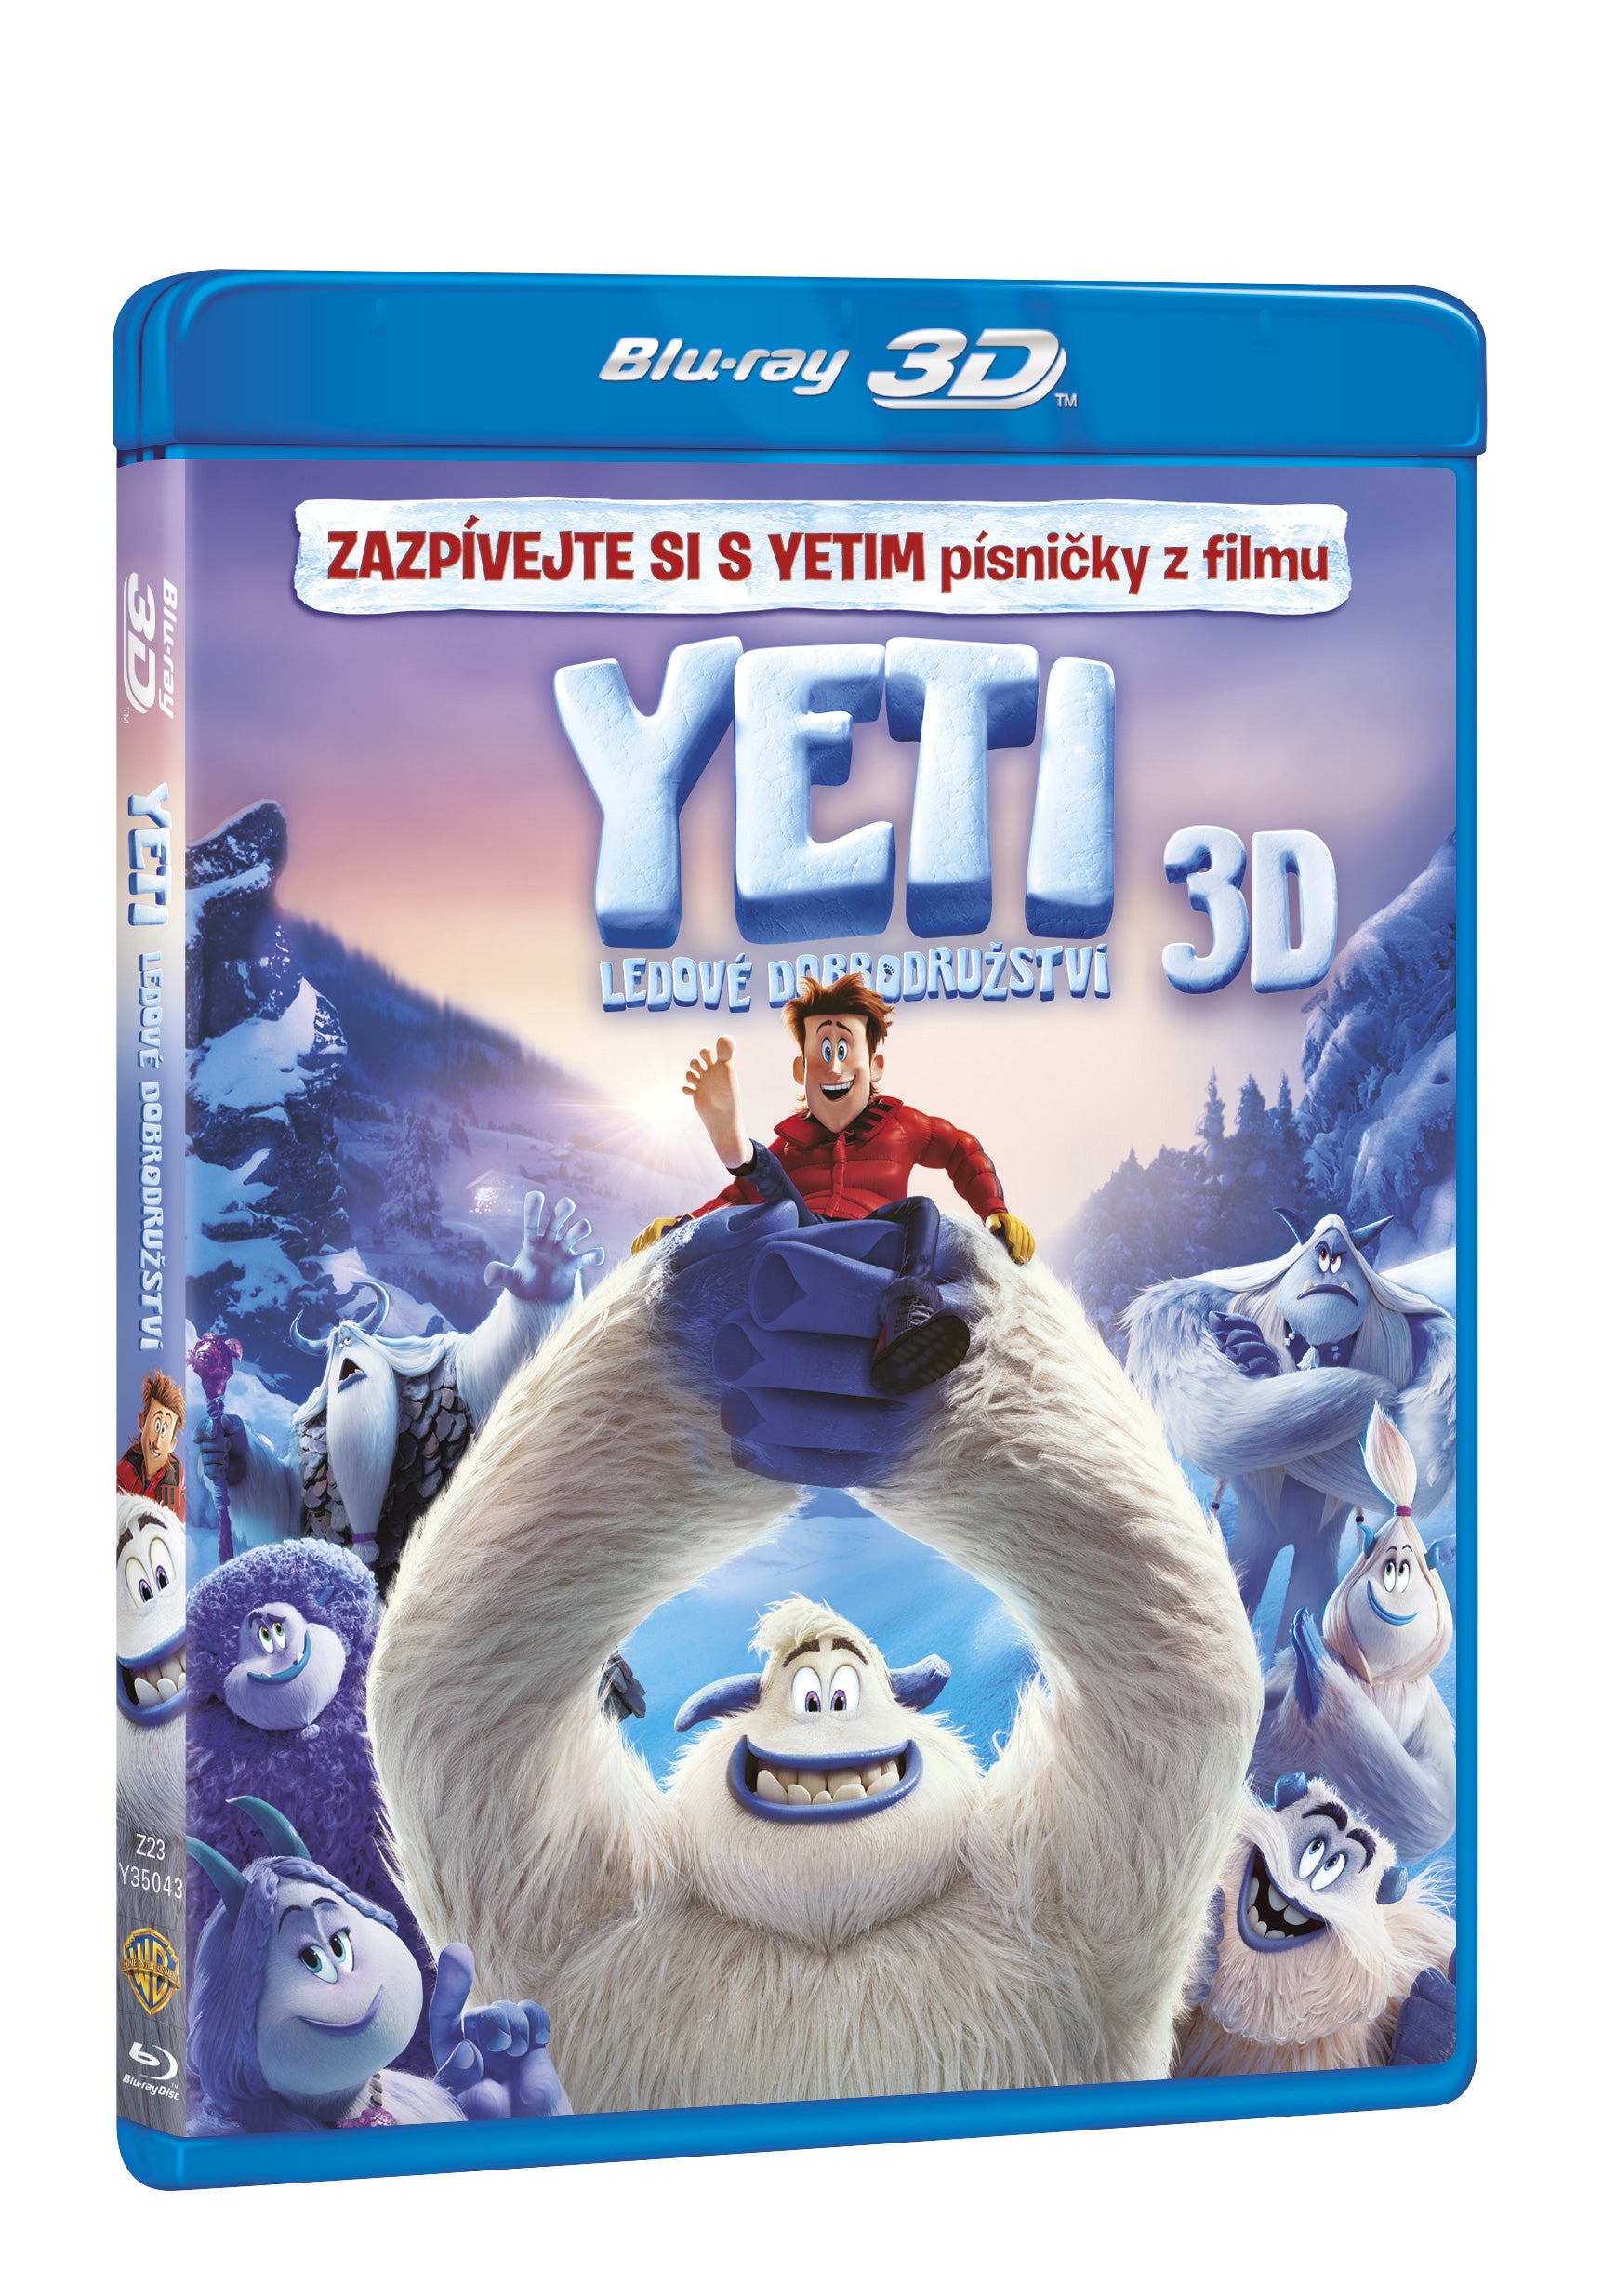 Yeti: Ledove dobrodruzstvi 2BD (3D+2D) / Smallfoot - Czech version